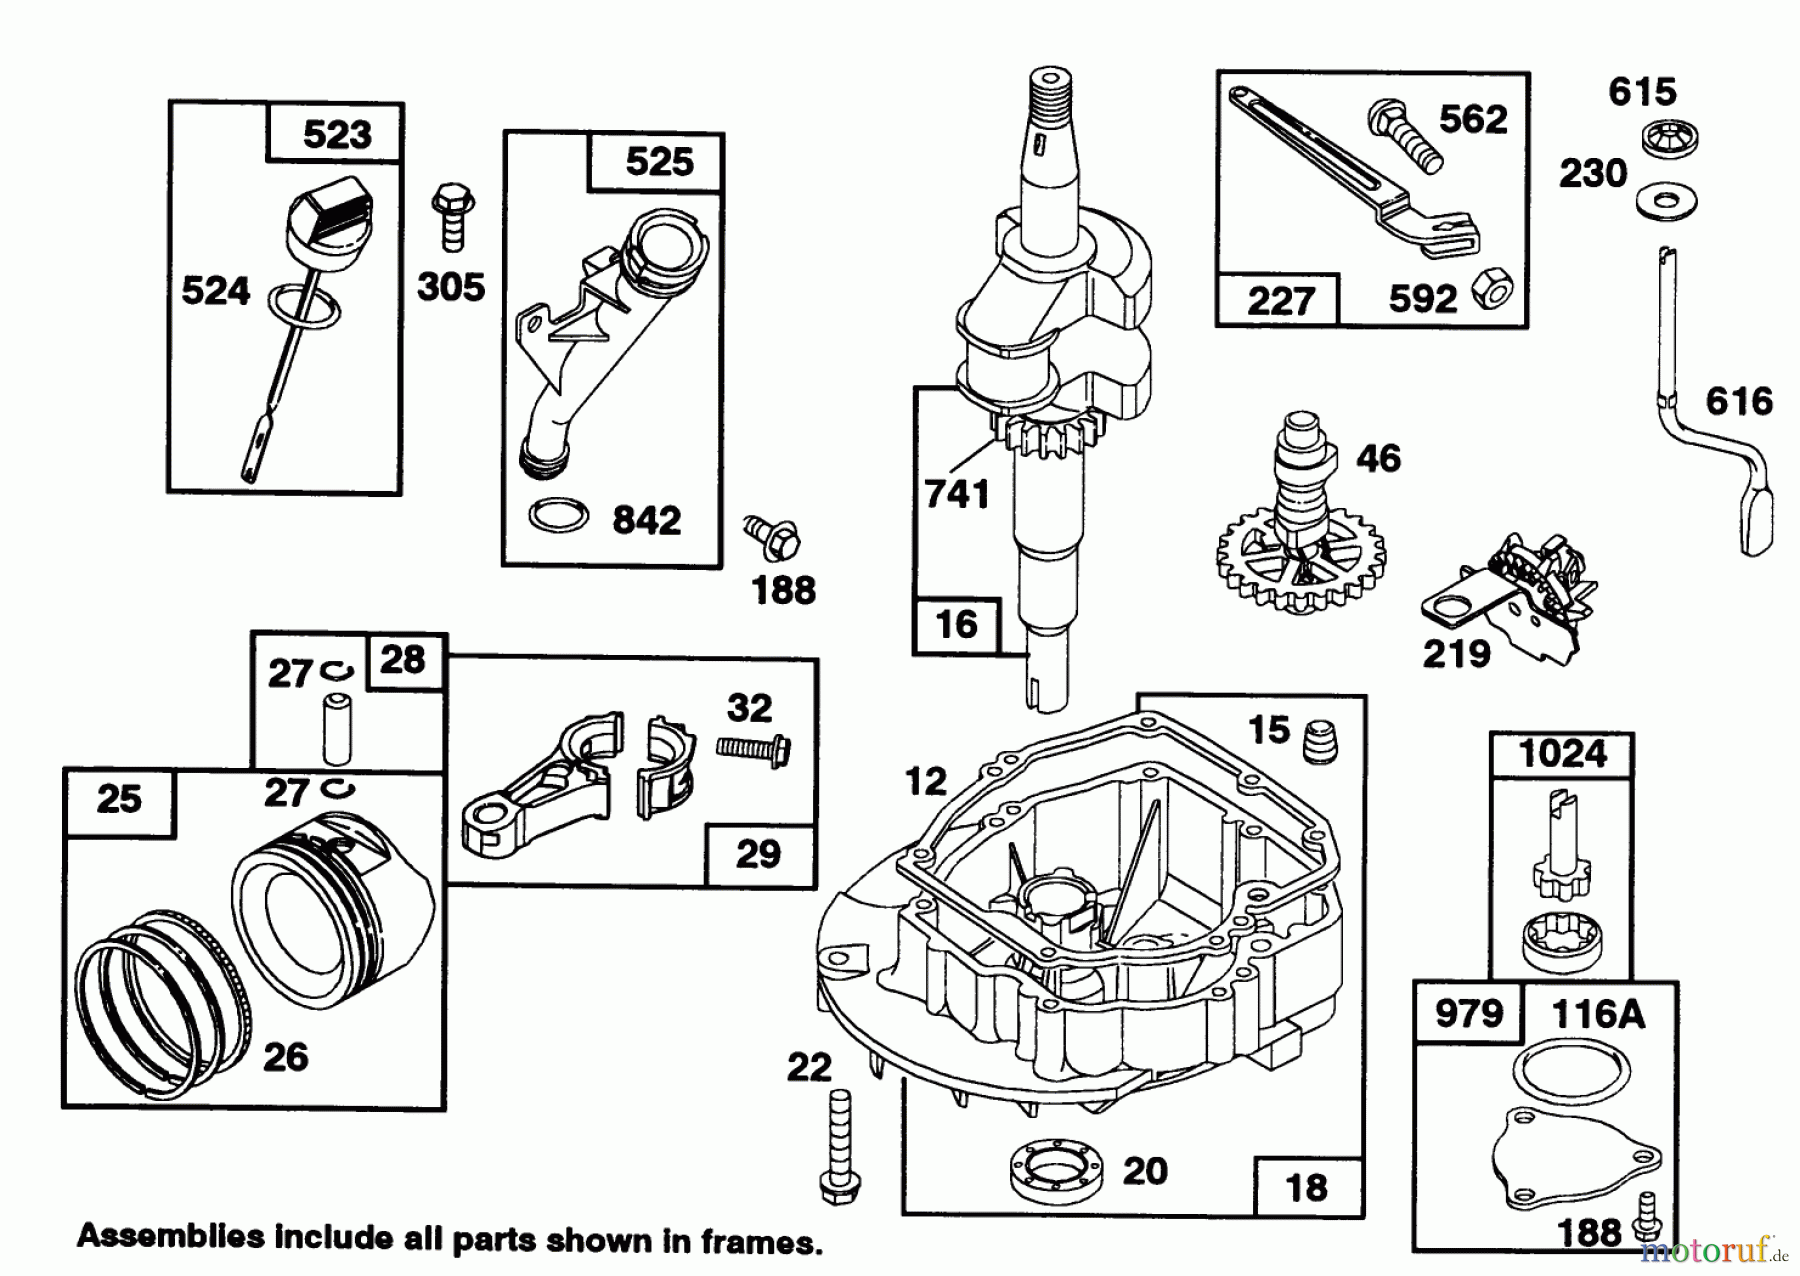  Toro Neu Mowers, Walk-Behind Seite 1 20328B - Toro Lawnmower, 1992 (2000001-2999999) ENGINE BRIGGS & STRATTON MODEL 97772-0112-01 #2